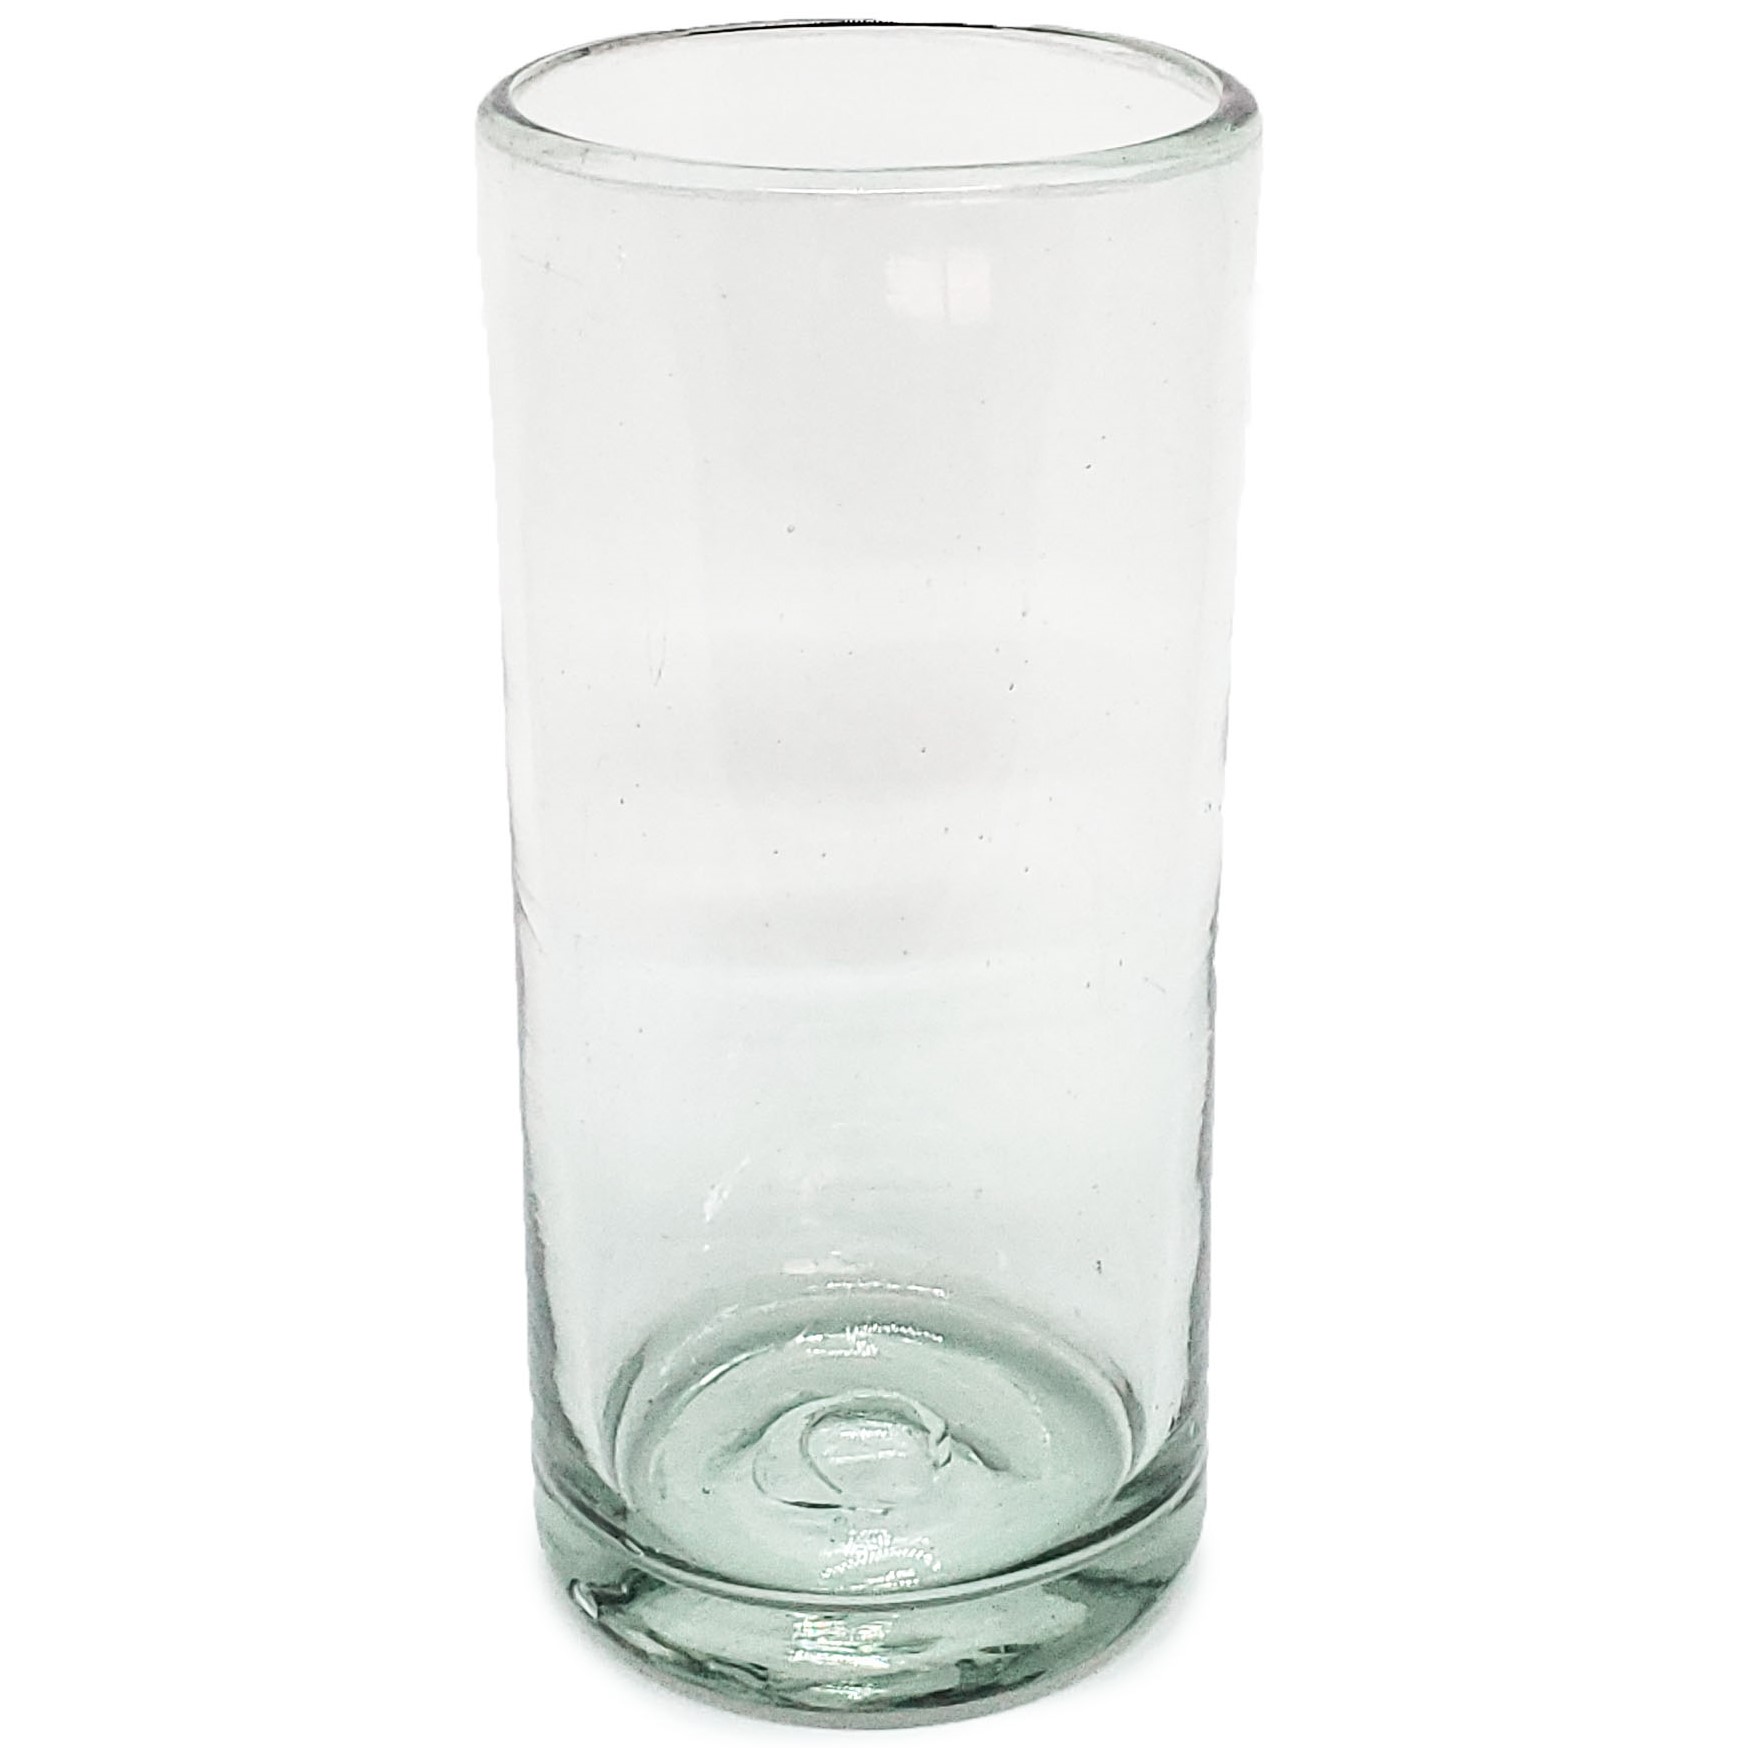 Color Transparente al Mayoreo / vasos Jumbo transparentes / Éste clásico juego de vasos jumbo está hecho con vidrio reciclado. Contiene pequeñas burbujas atrapadas en el vaso.